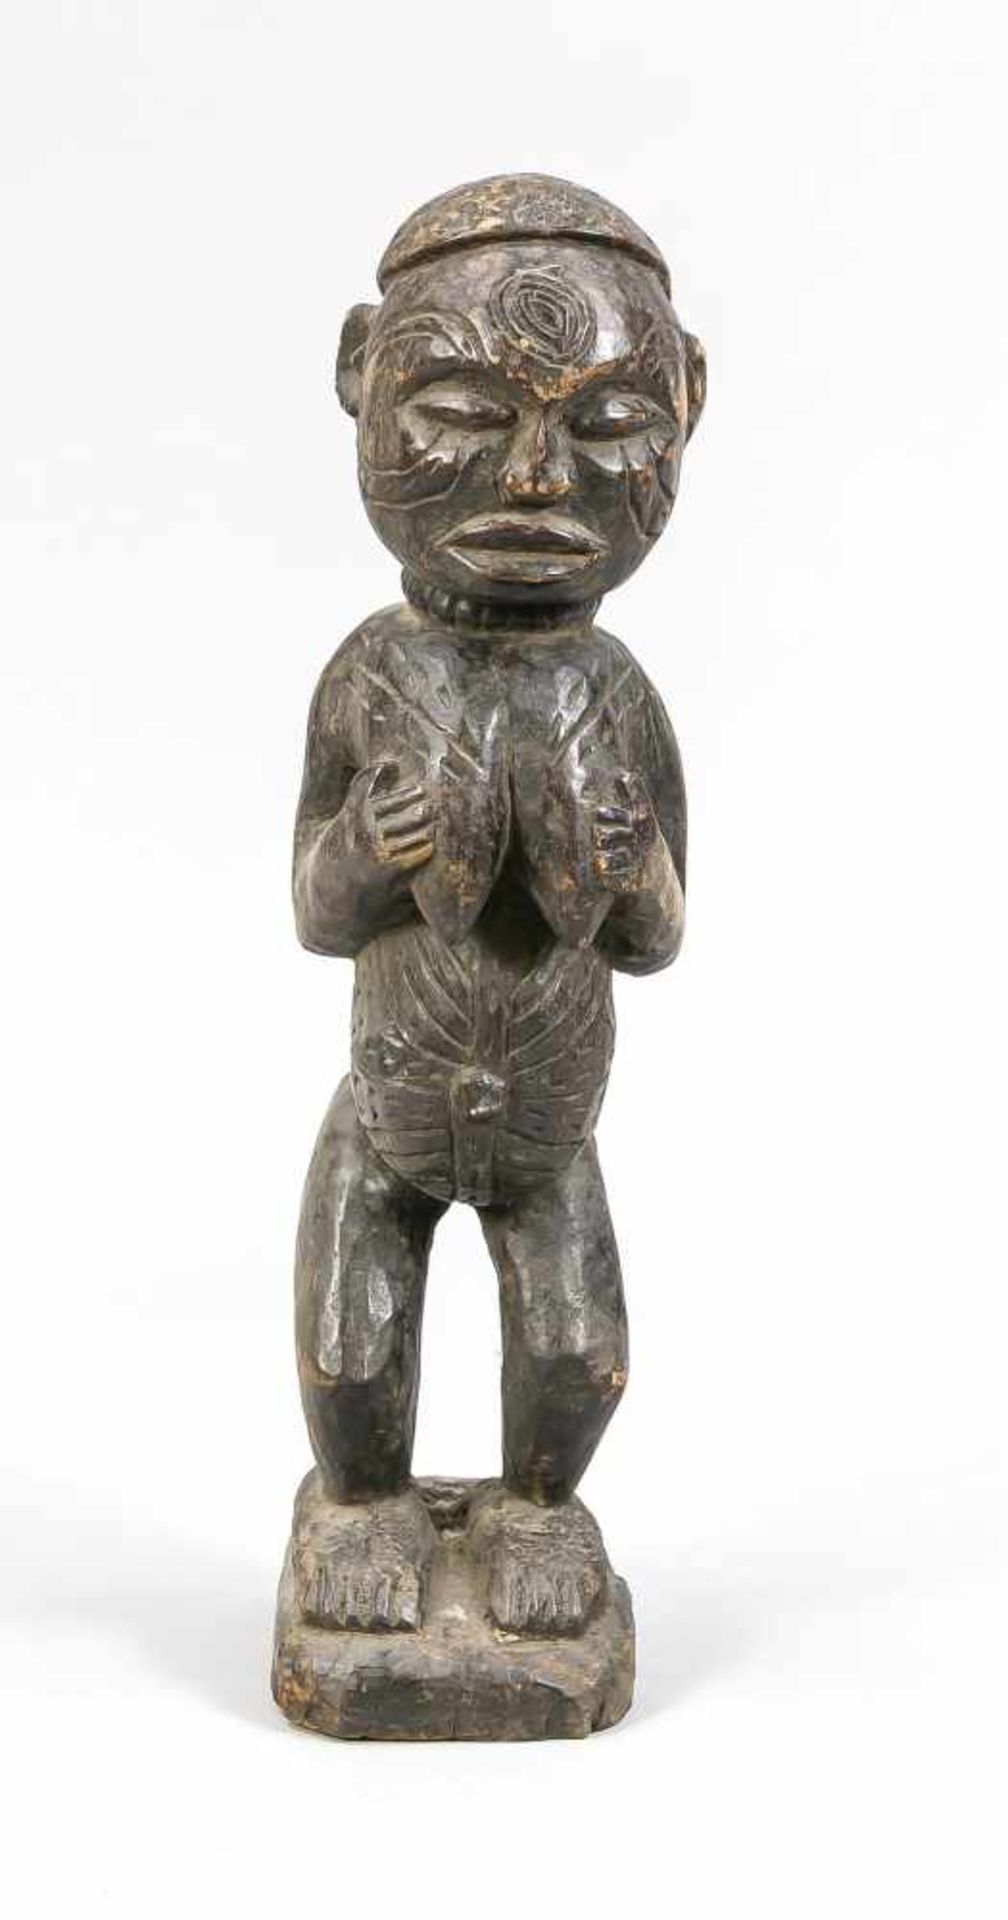 Stehende weibliche Figur, wohl Westafrika. Holz mit dunkler Fassung. Bauch, Brüste undGesicht mit